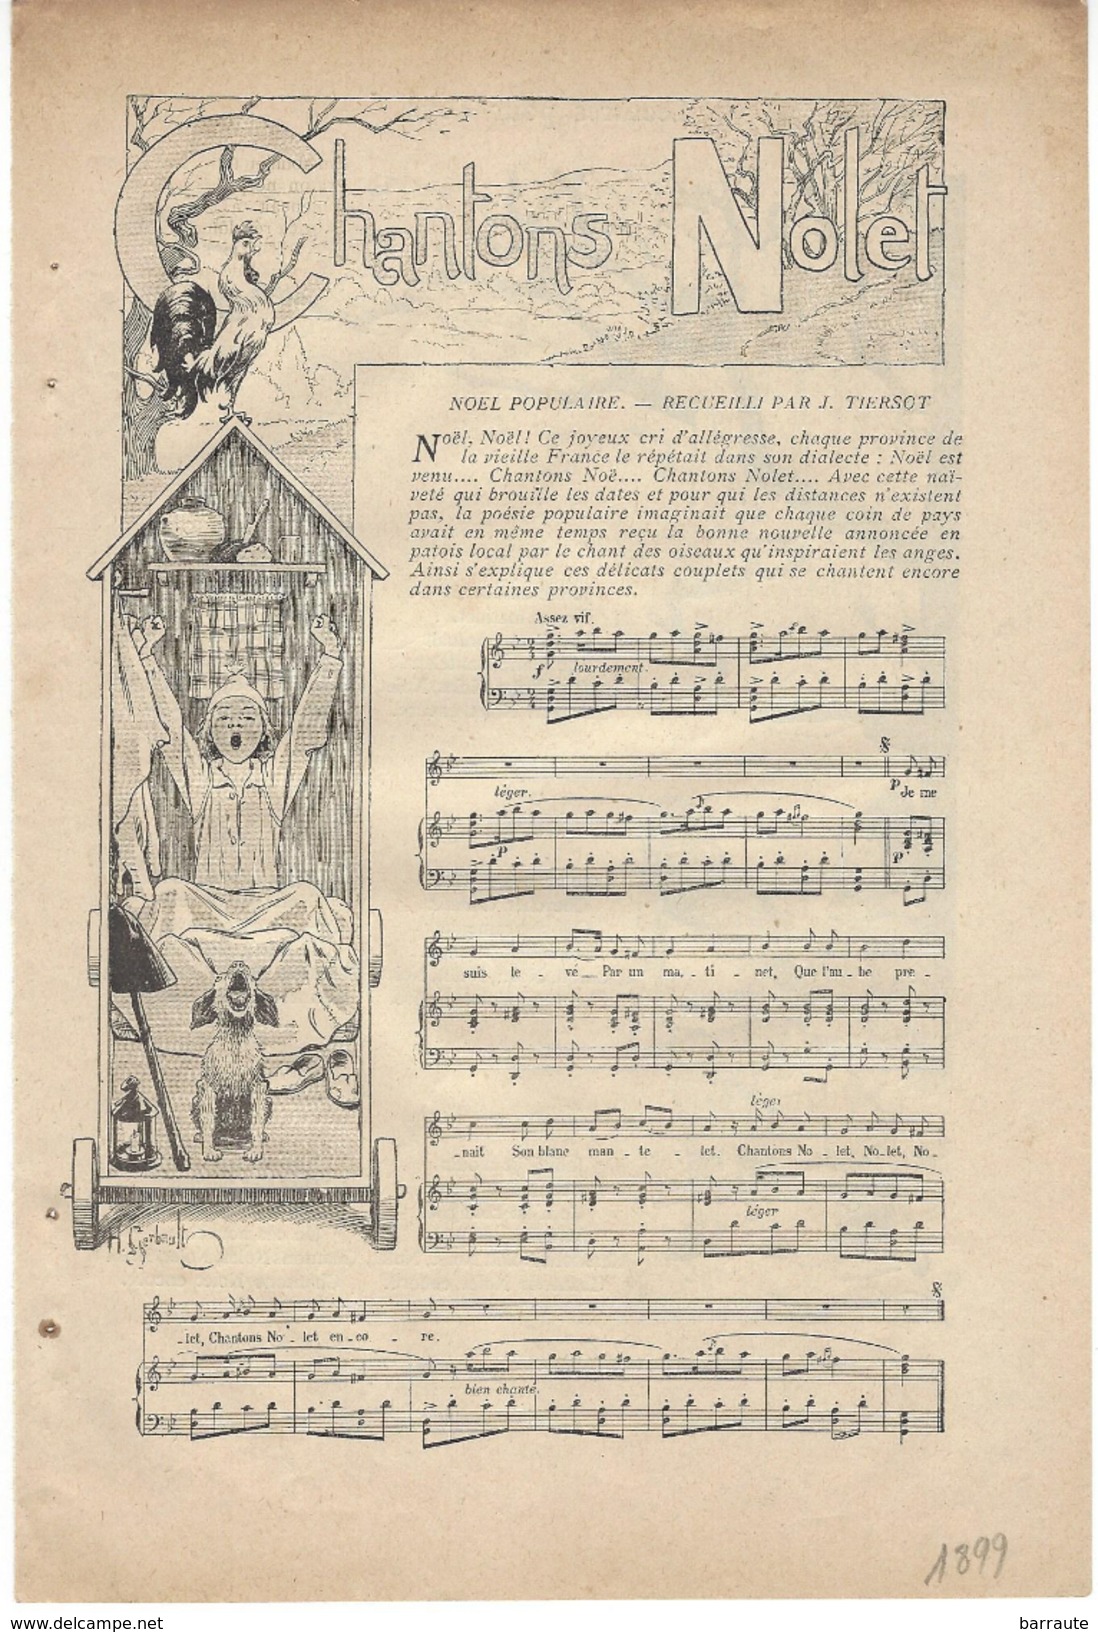 Feuillet Article Actualité 1899  PARTITION De Musique CHANT DE NOEL Recueilli Par J.TIERSOT. - Documents Historiques